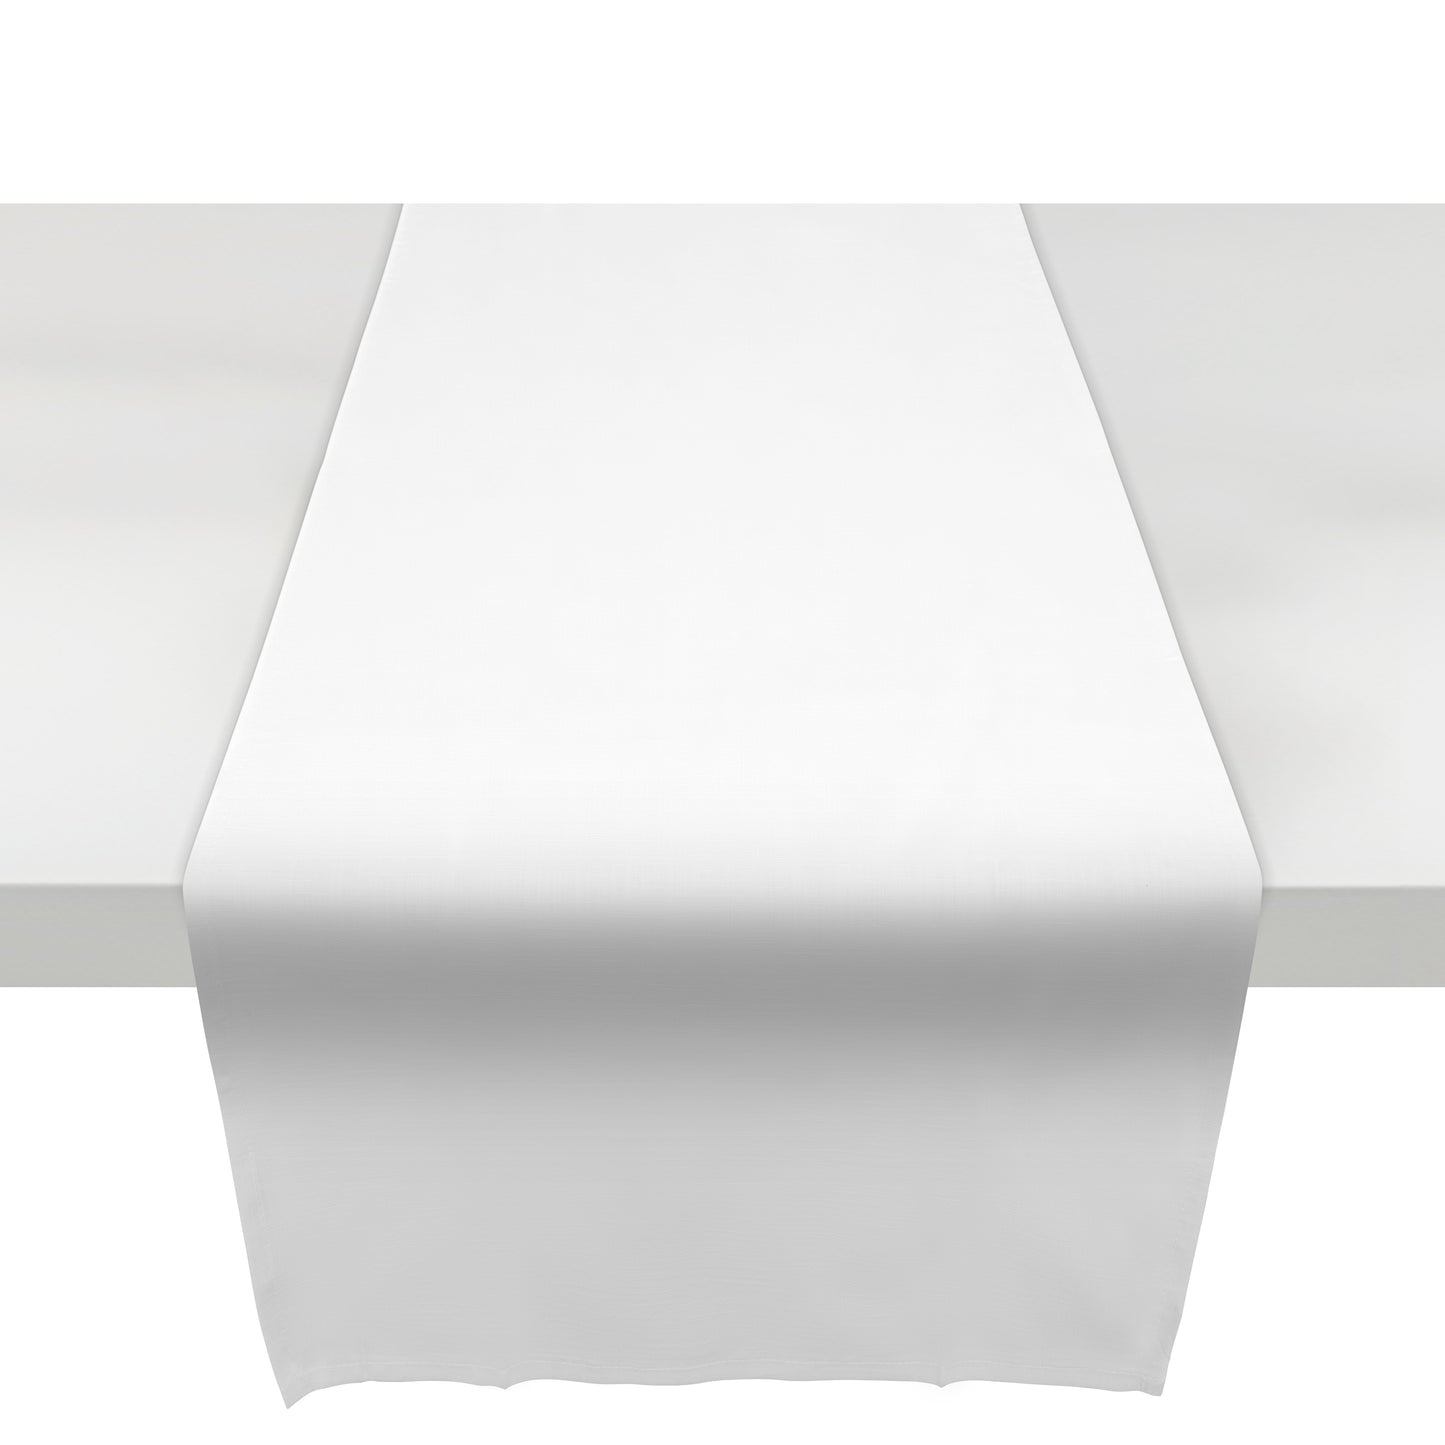 unendlich schoen – 2er-Set Tischläufer weiß (Offwhite() 50 x 150 cm aus 100% Baumwolle in höchster Qualität, Tischdecke für Wohnzimmer und Esstisch faltenfrei fallend, leicht zu reinigen